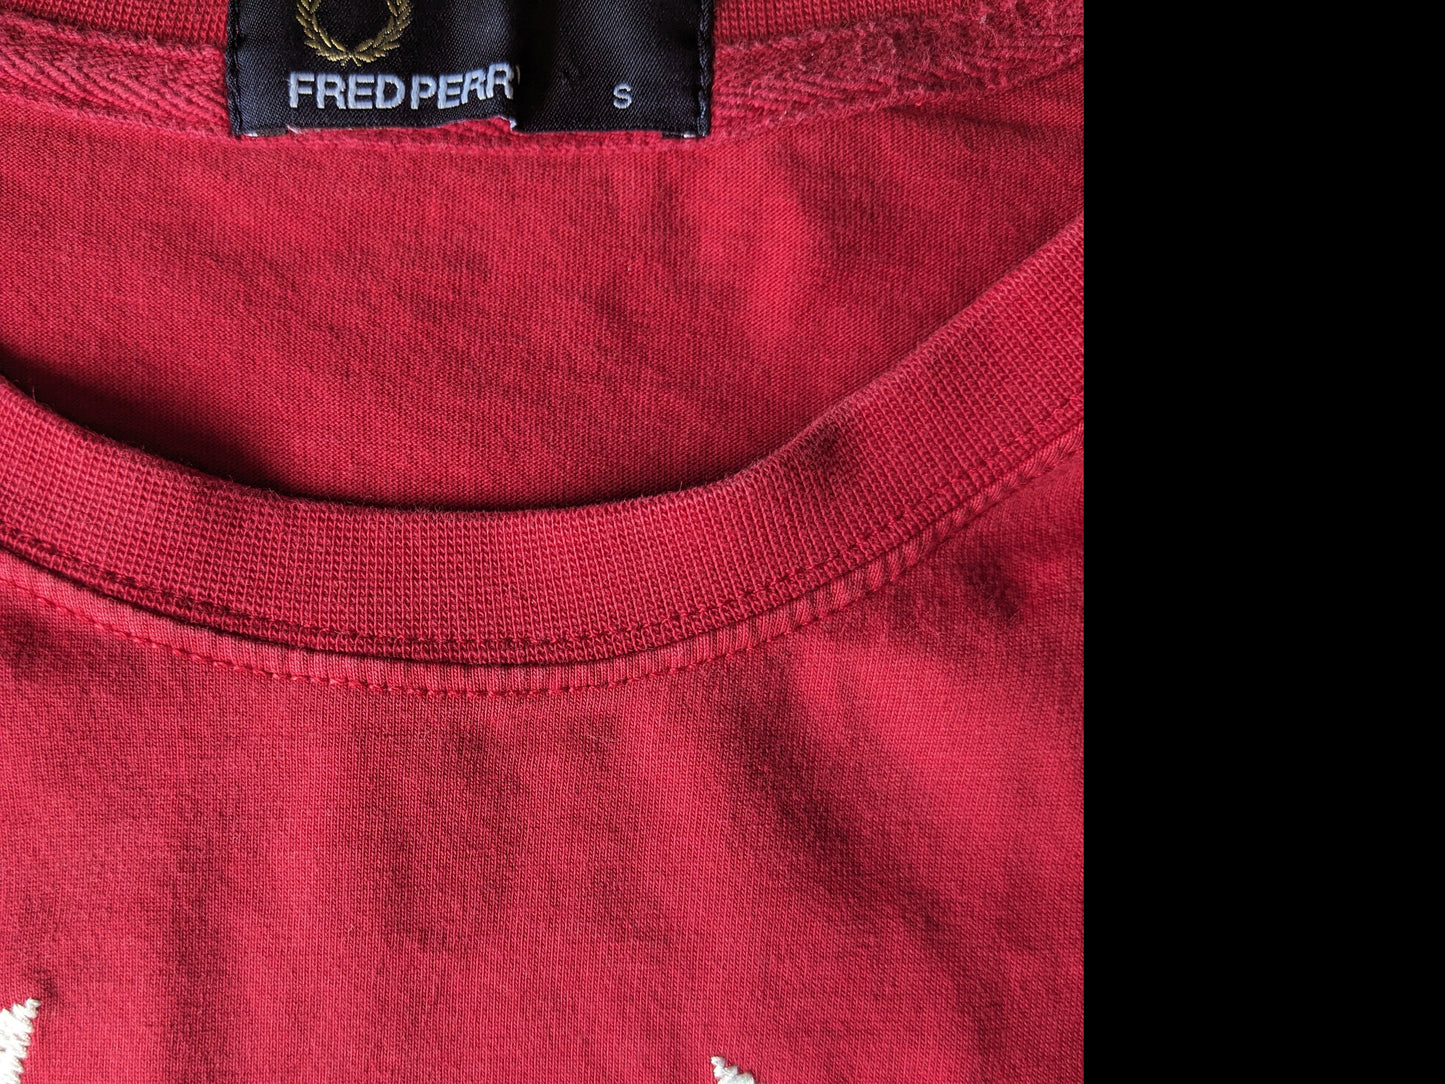 Camisa Fred Perry. Color rojo con aplicación blanca. Tamaño S.